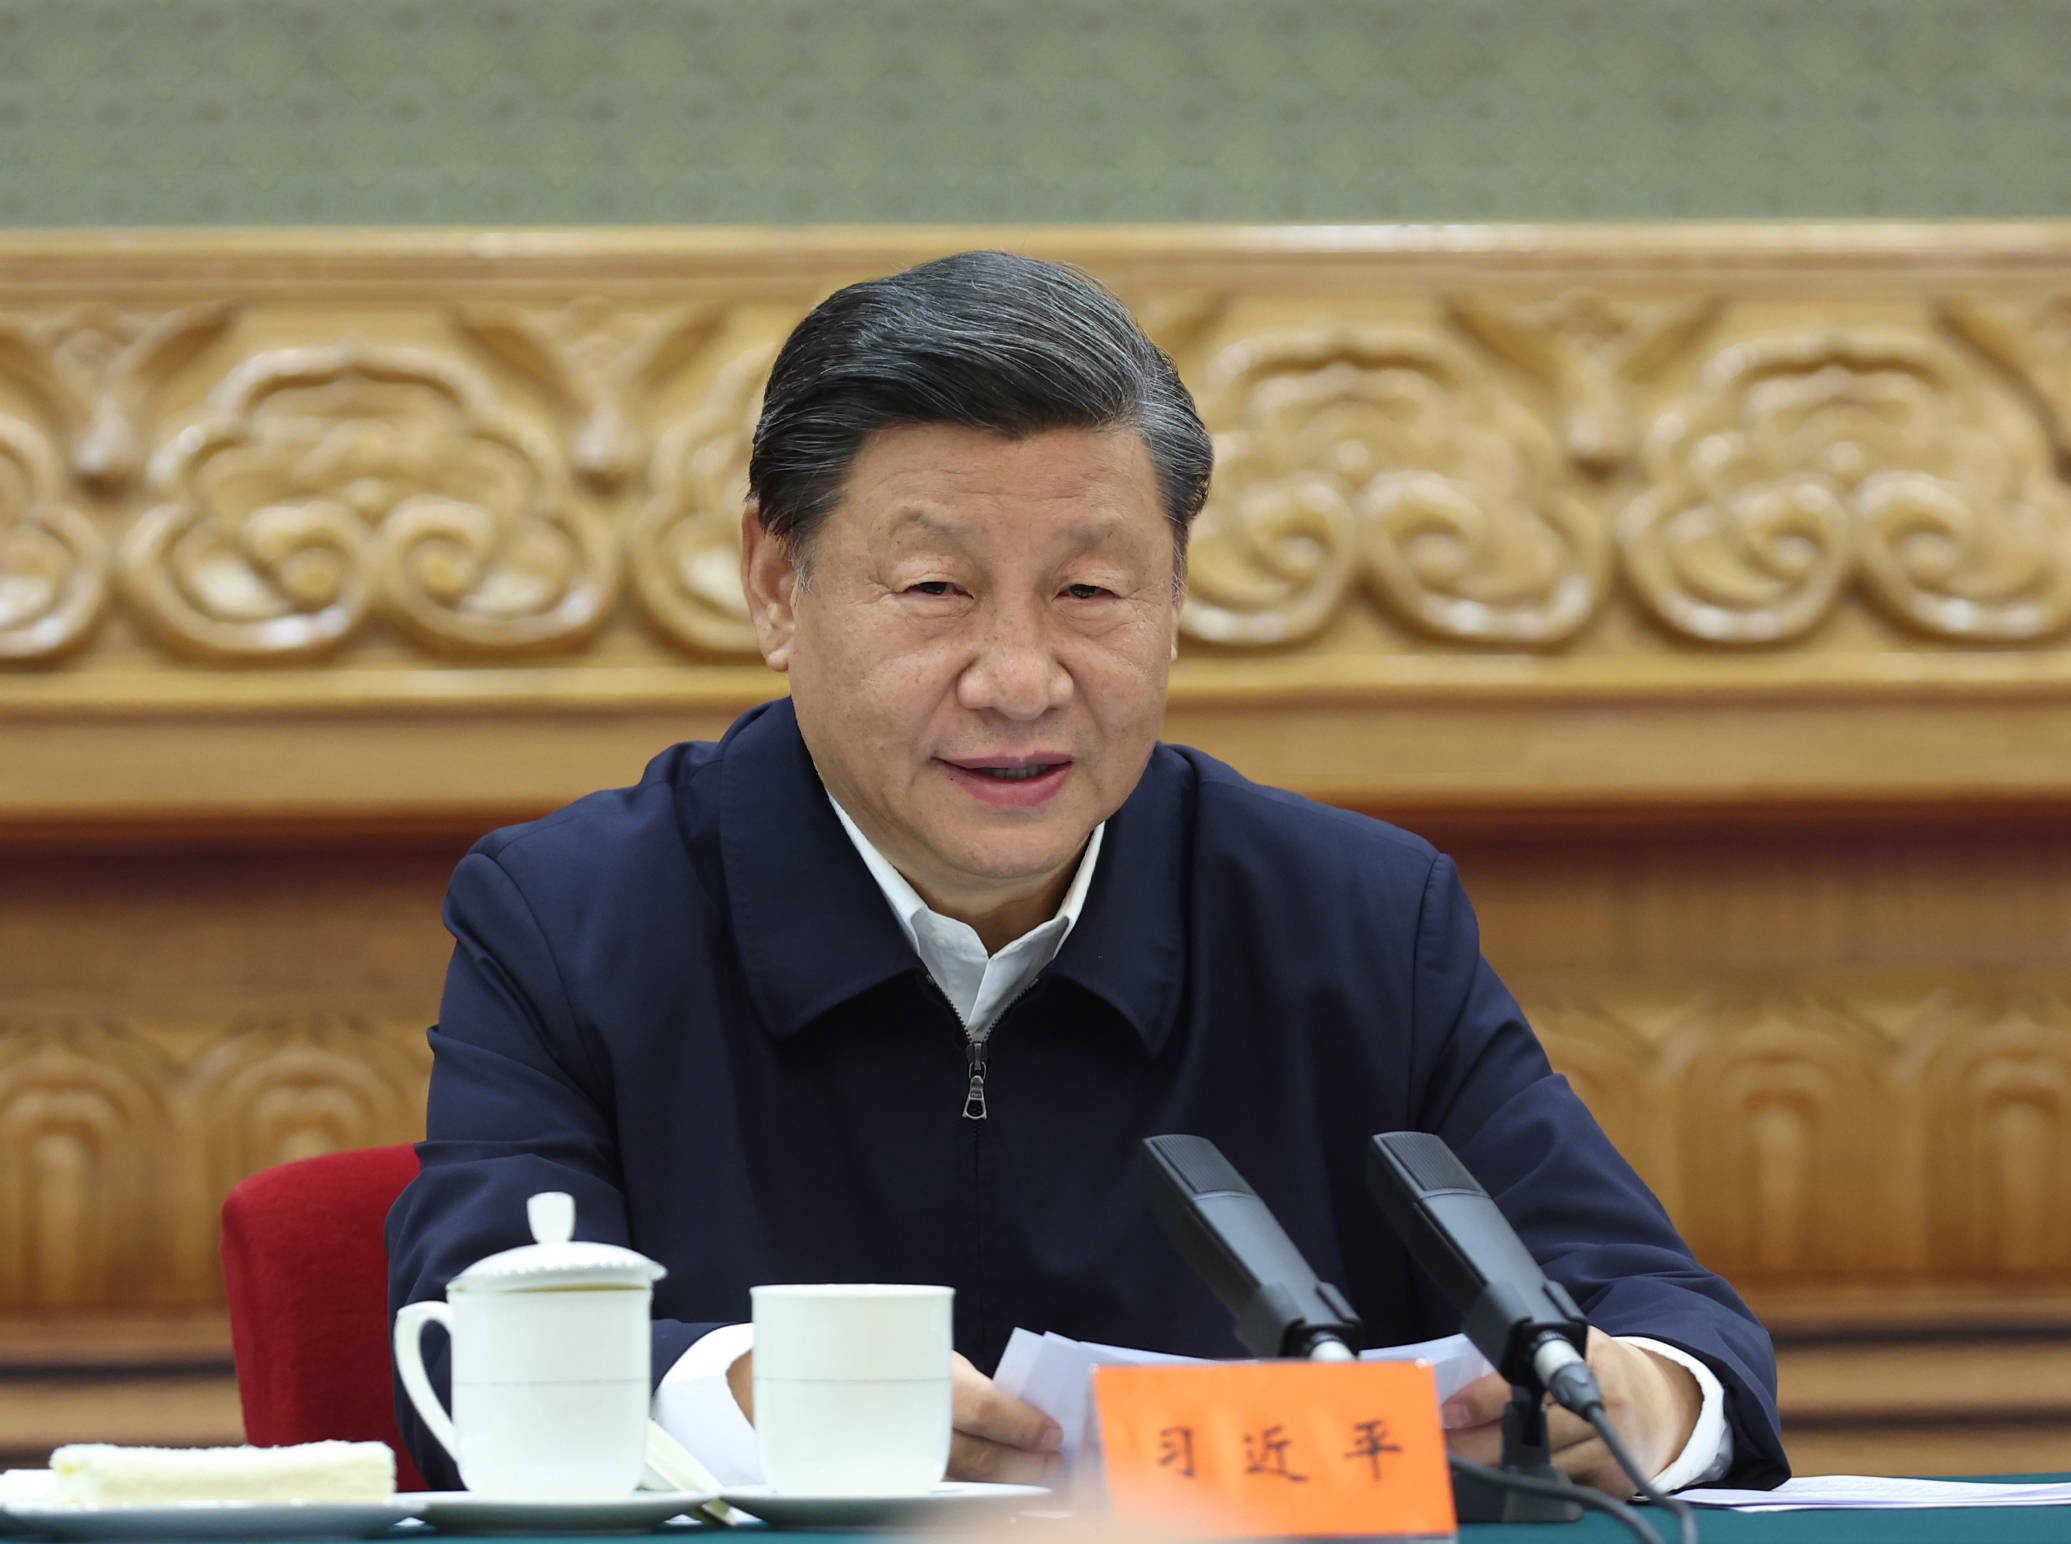 De Chinese president Xi jinping